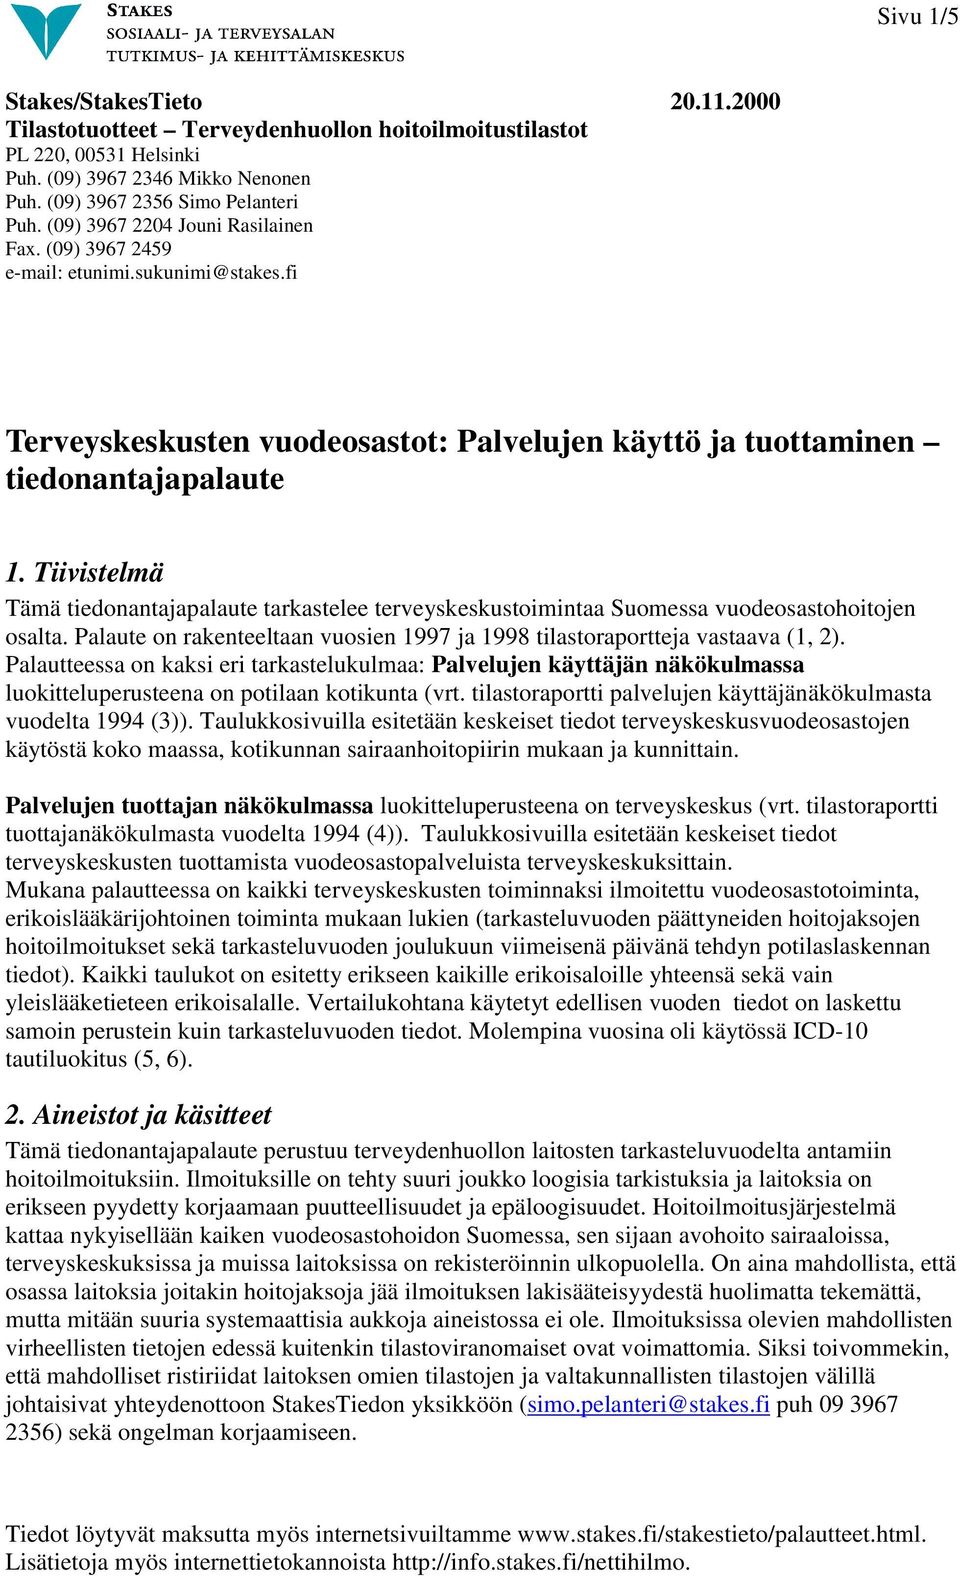 Tiivistelmä Tämä tiedonantajapalaute tarkastelee terveyskeskustoimintaa Suomessa vuodeosastohoitojen osalta. Palaute on rakenteeltaan vuosien 1997 ja 1998 tilastoraportteja vastaava (1, 2).